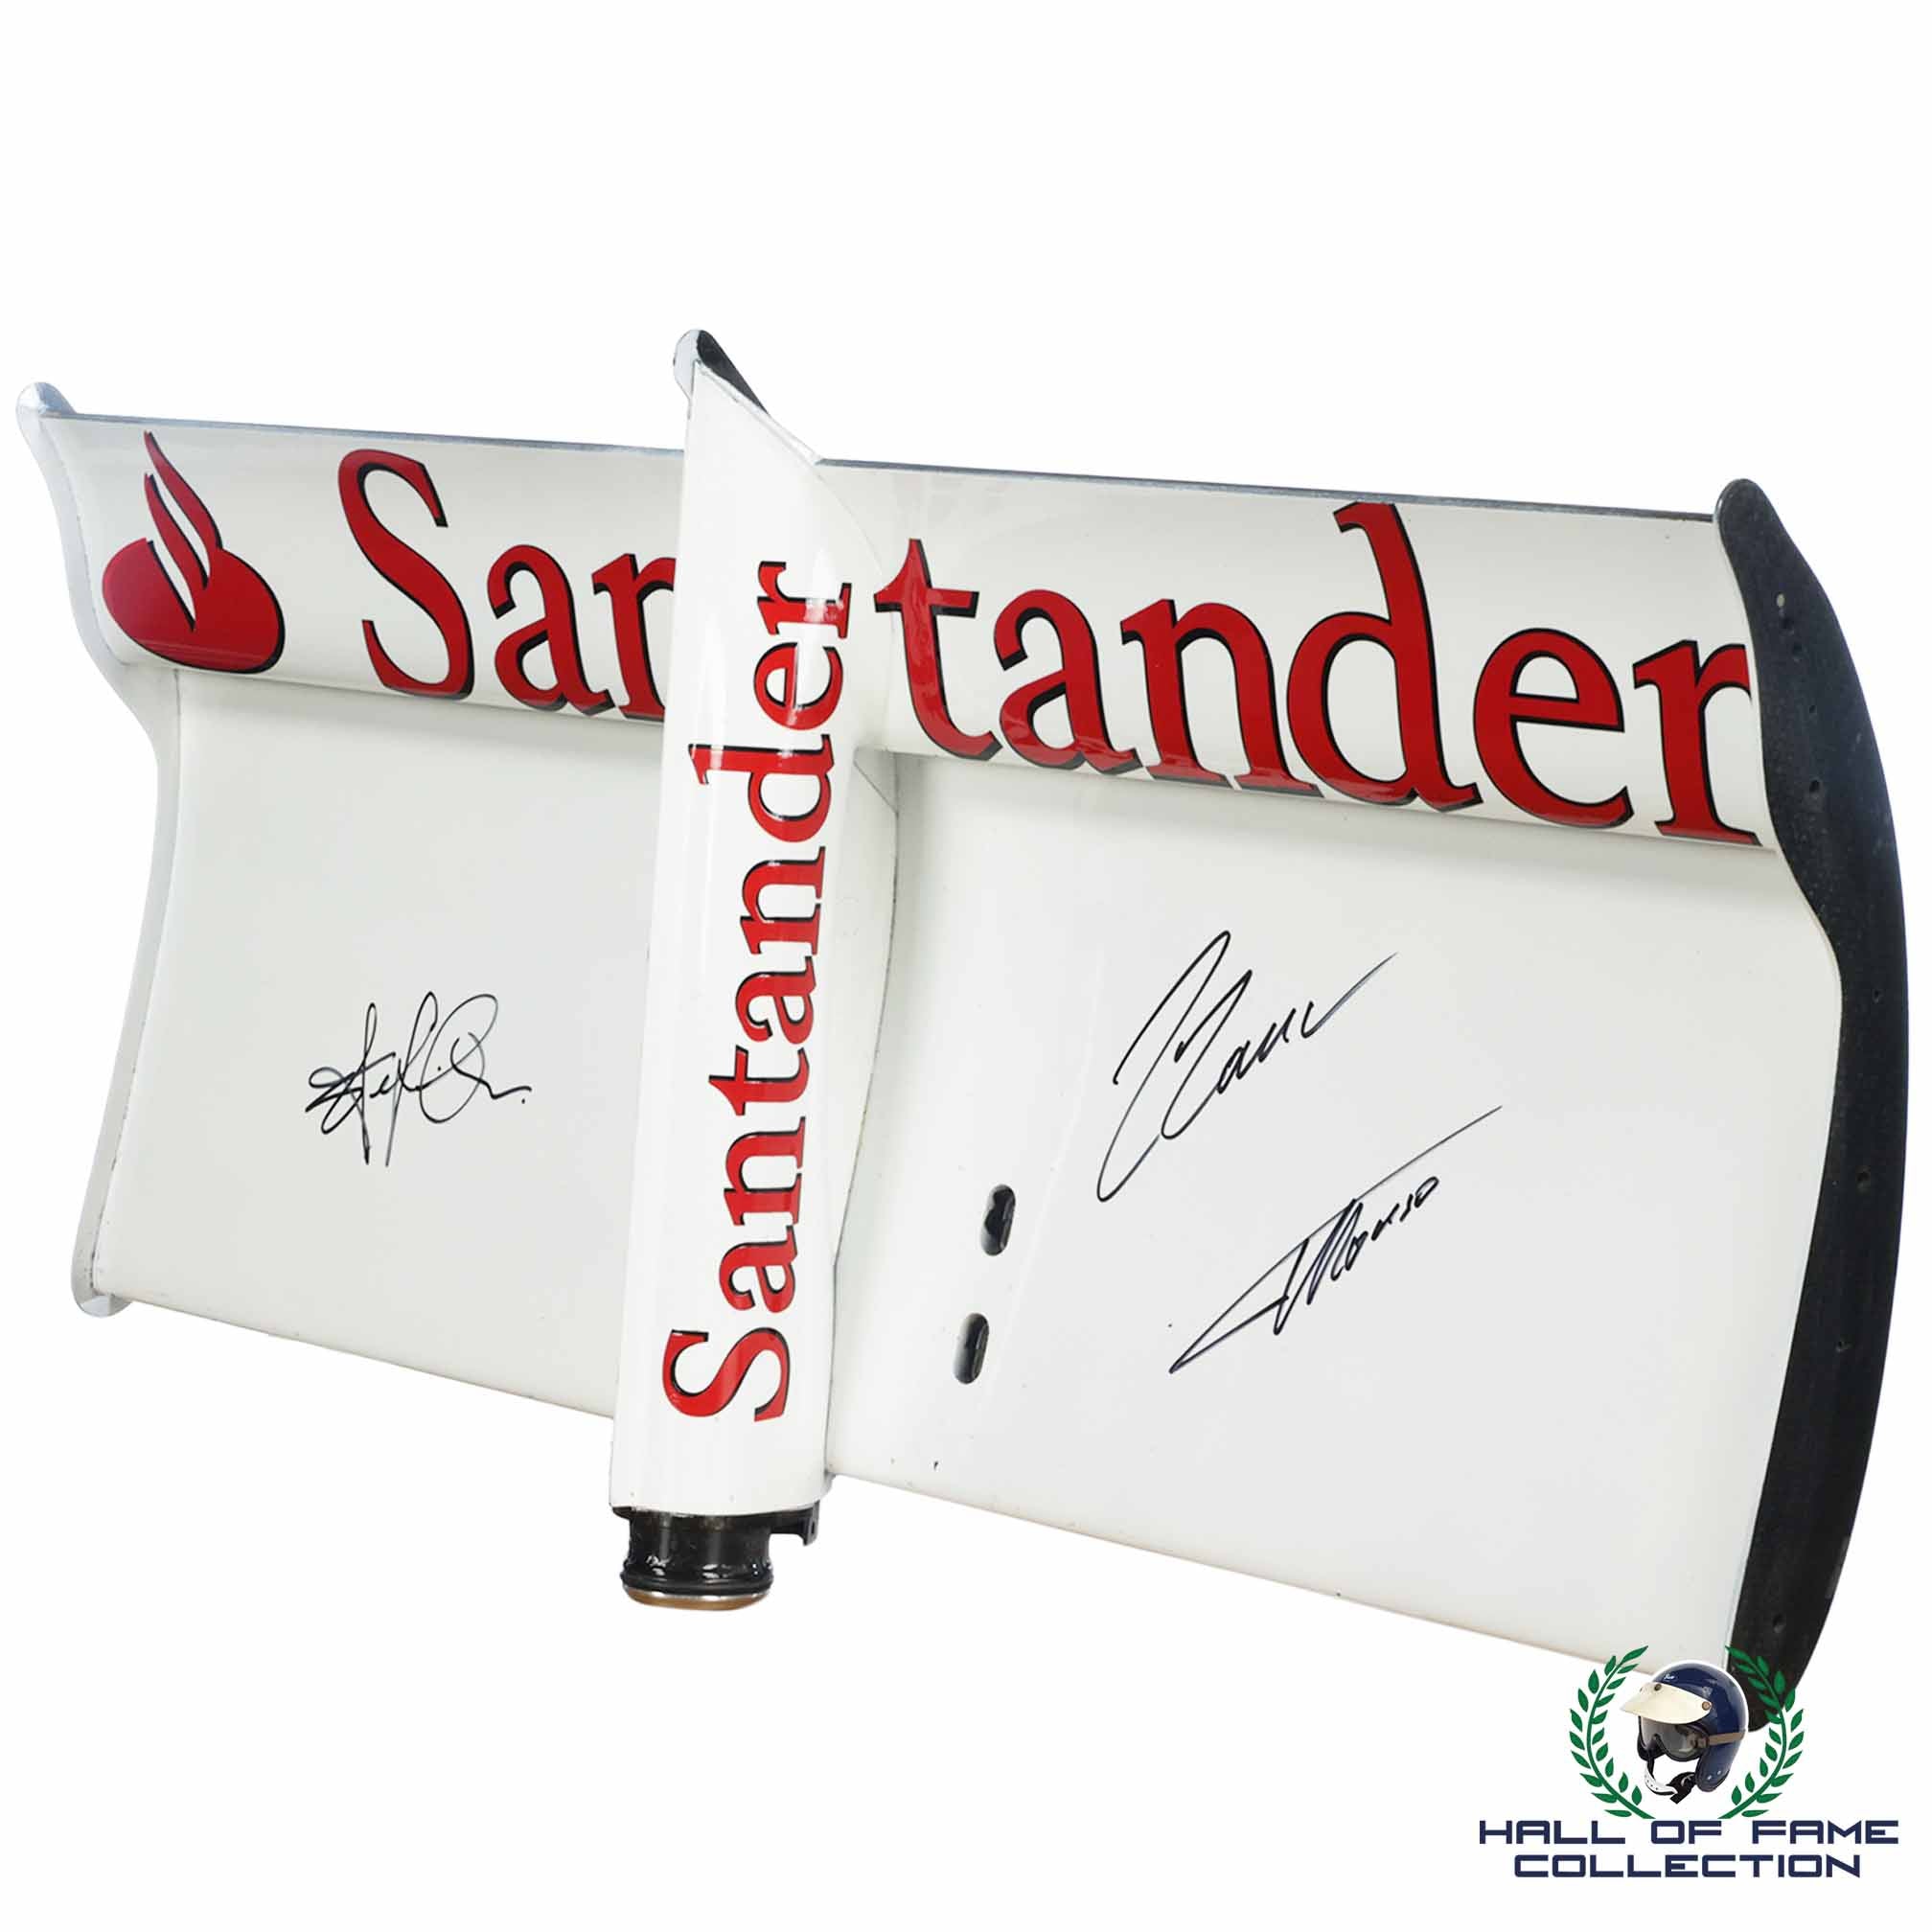 2010 Fernando Alonso/Felipe Massa/Stefano Domenicali Signed Scuderia Ferrari F10 F1 Rear Wing